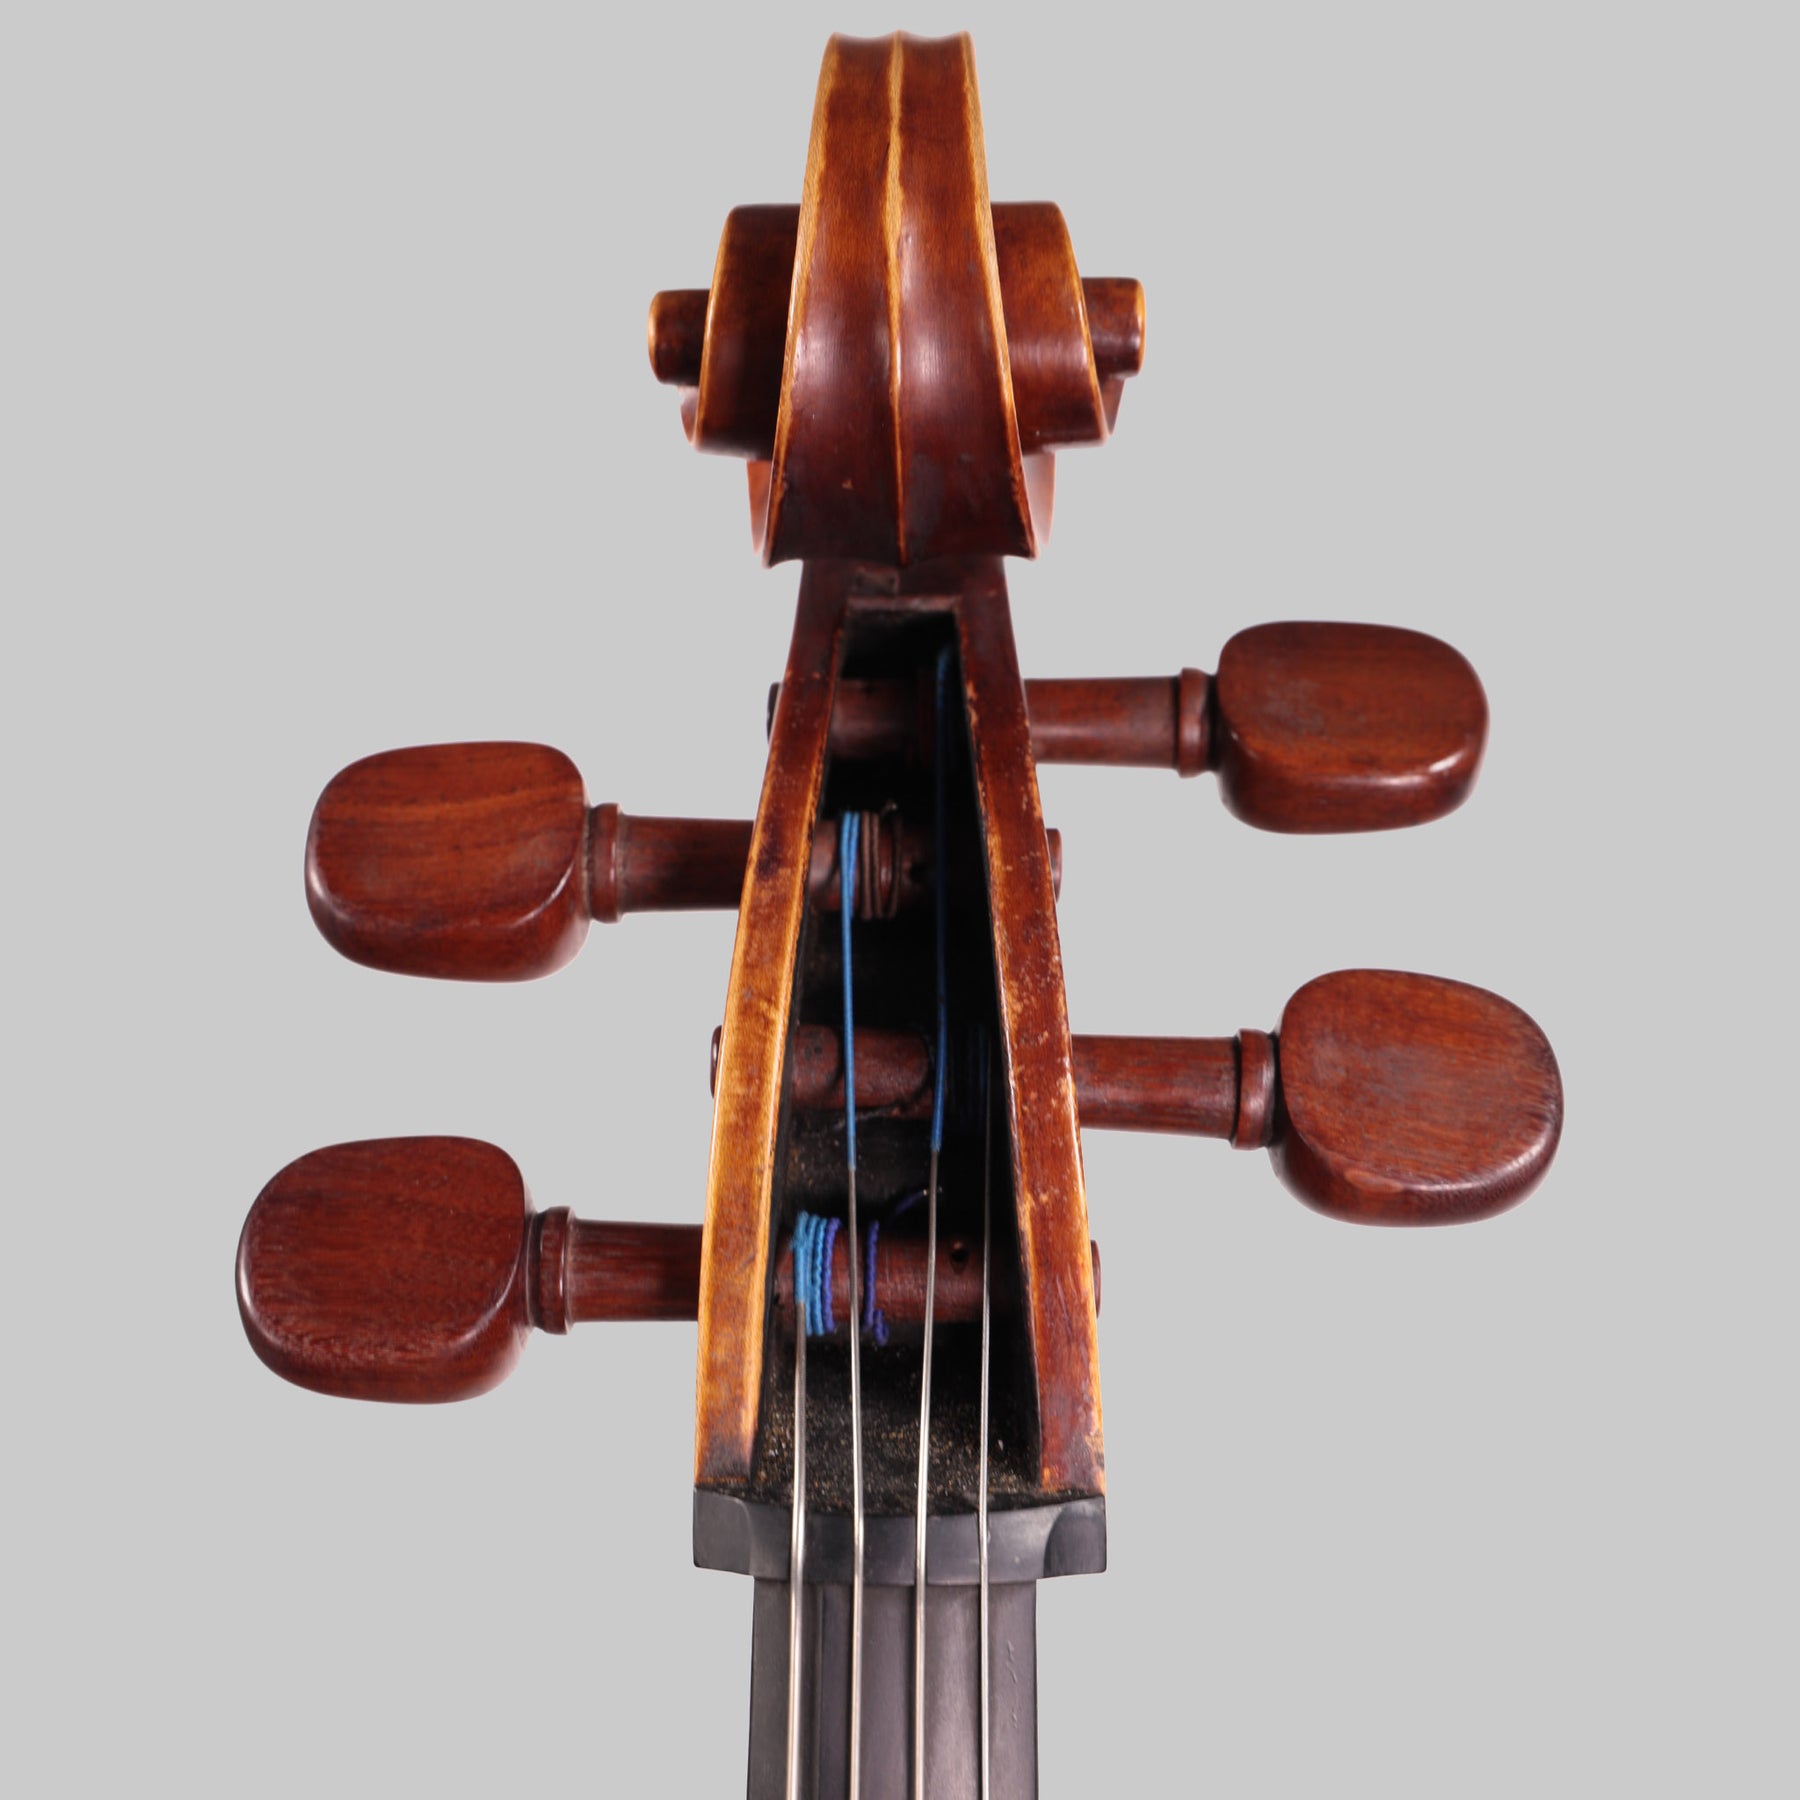 Arturo Moreno, Mexico D.F. Cello 1992